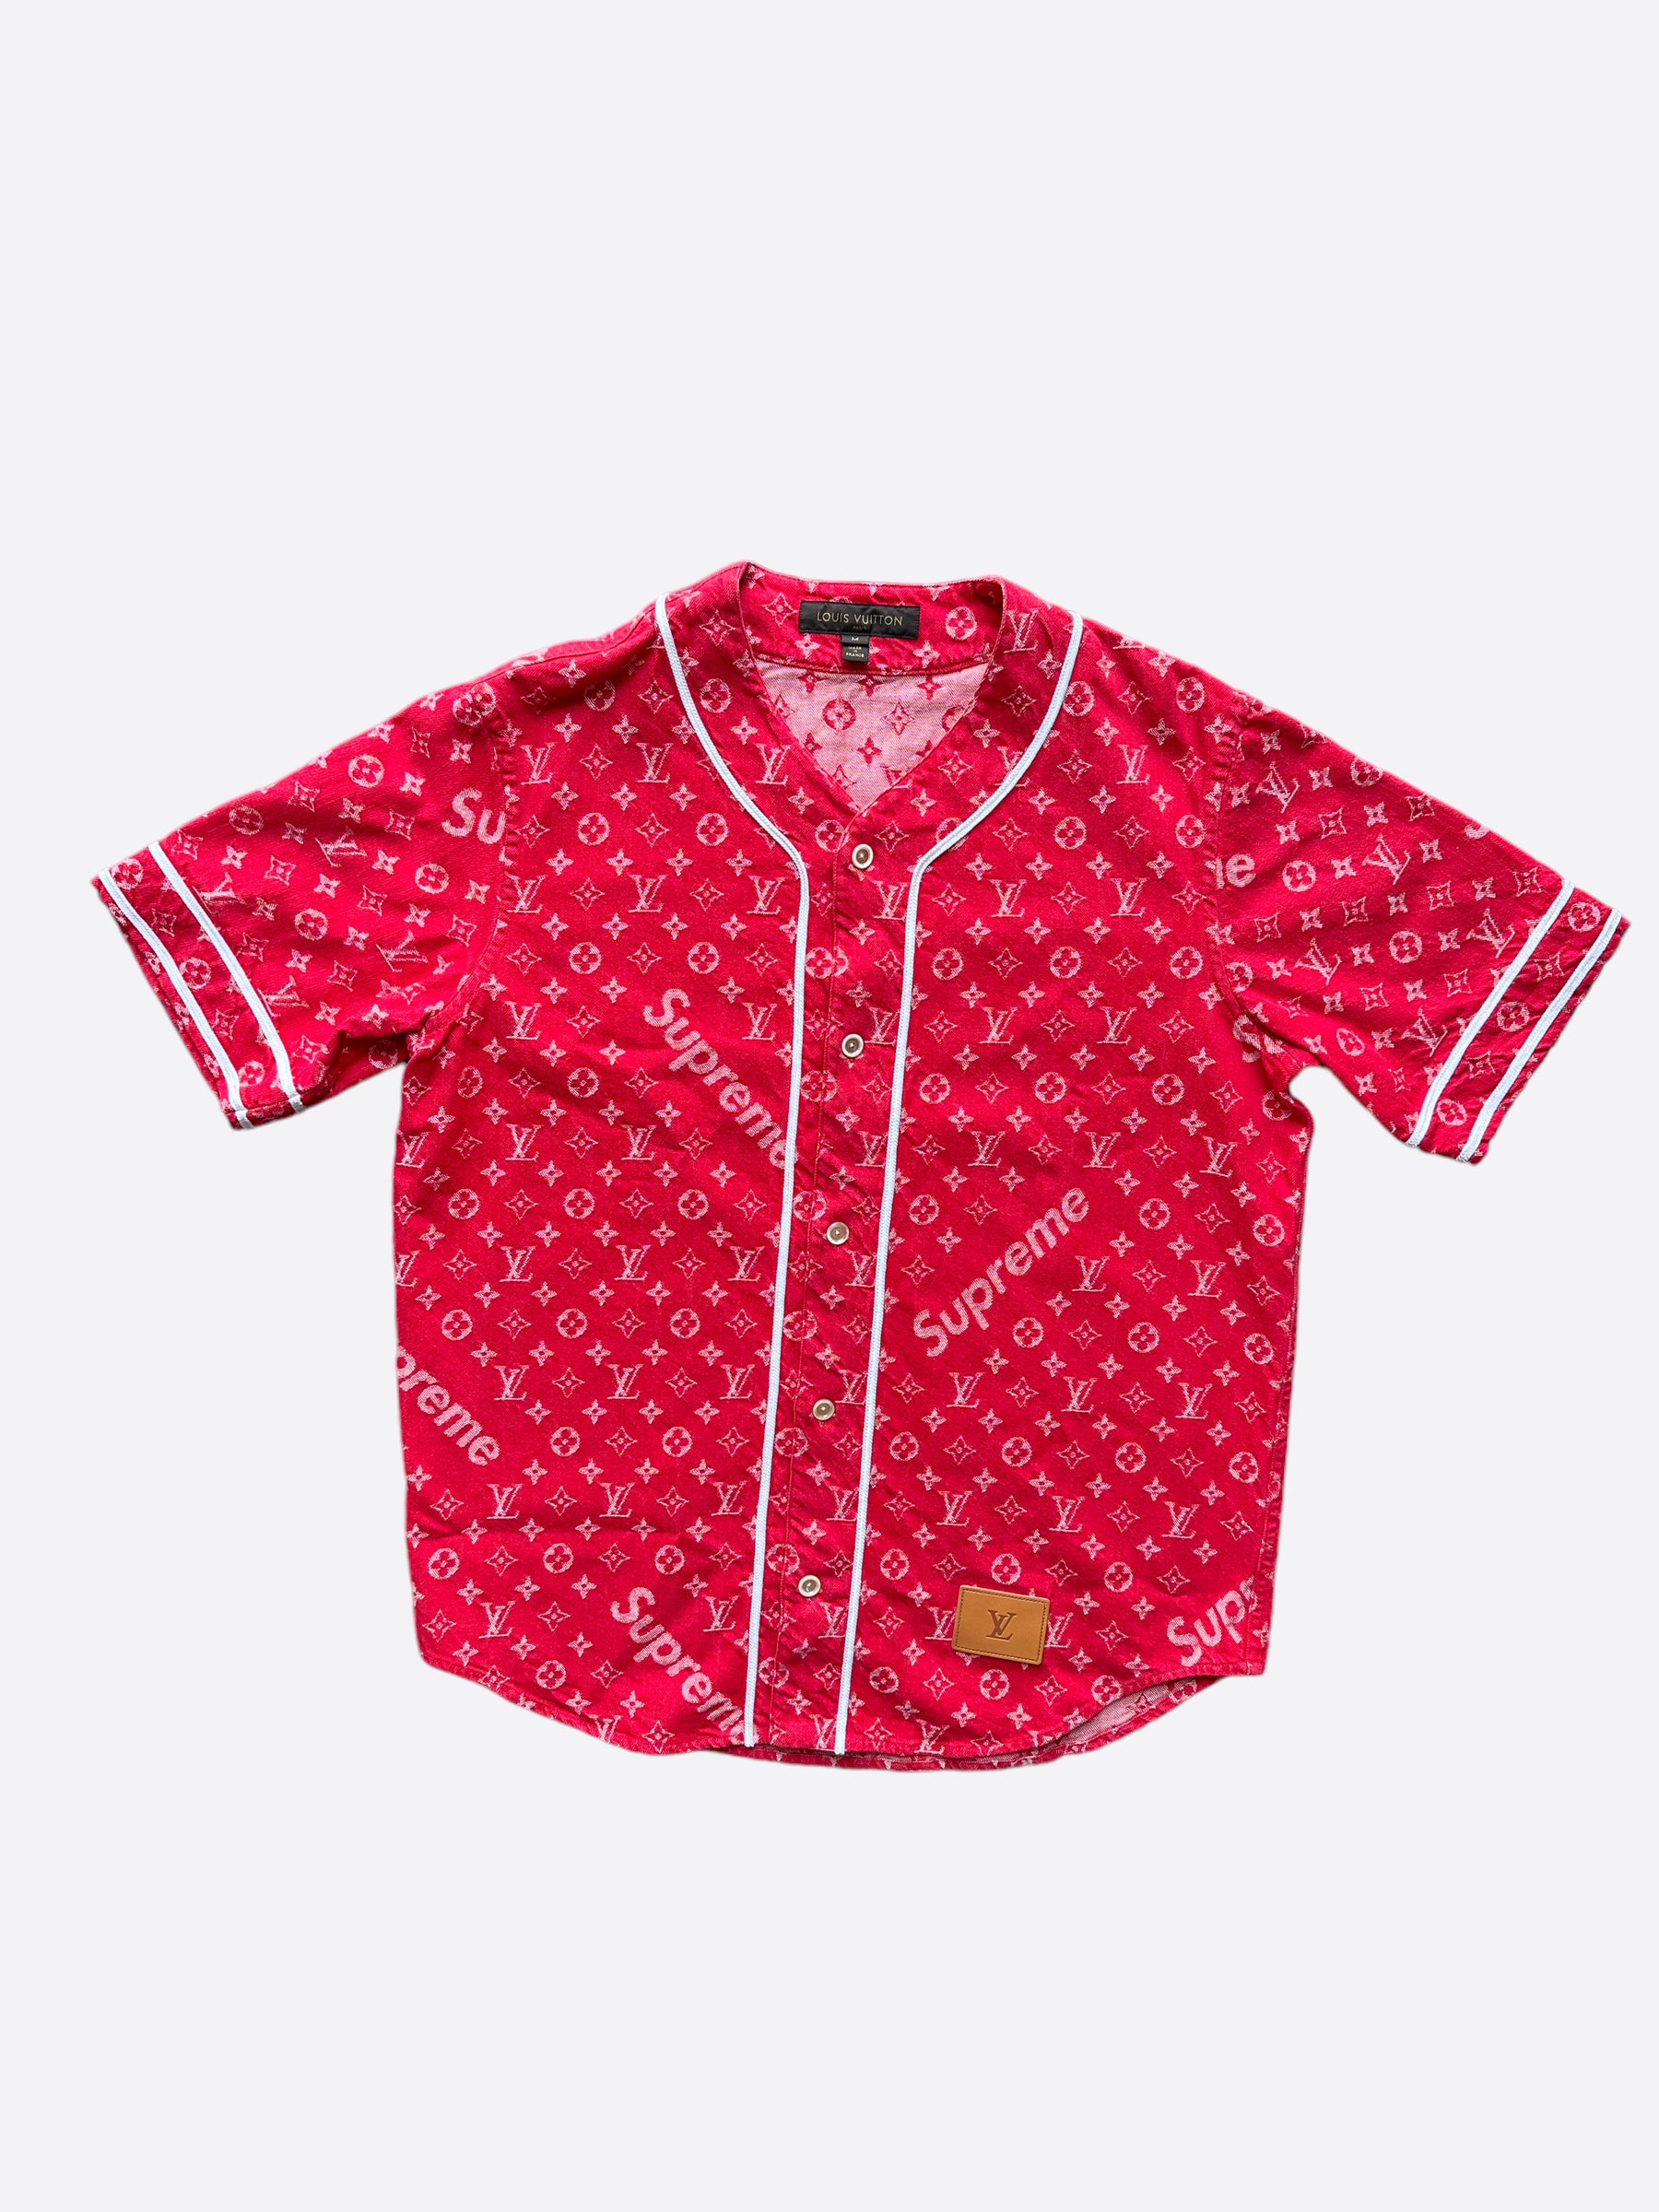 Louis Vuitton, Shirts, Louis Vuitton X Supreme Denim Baseball Jersey